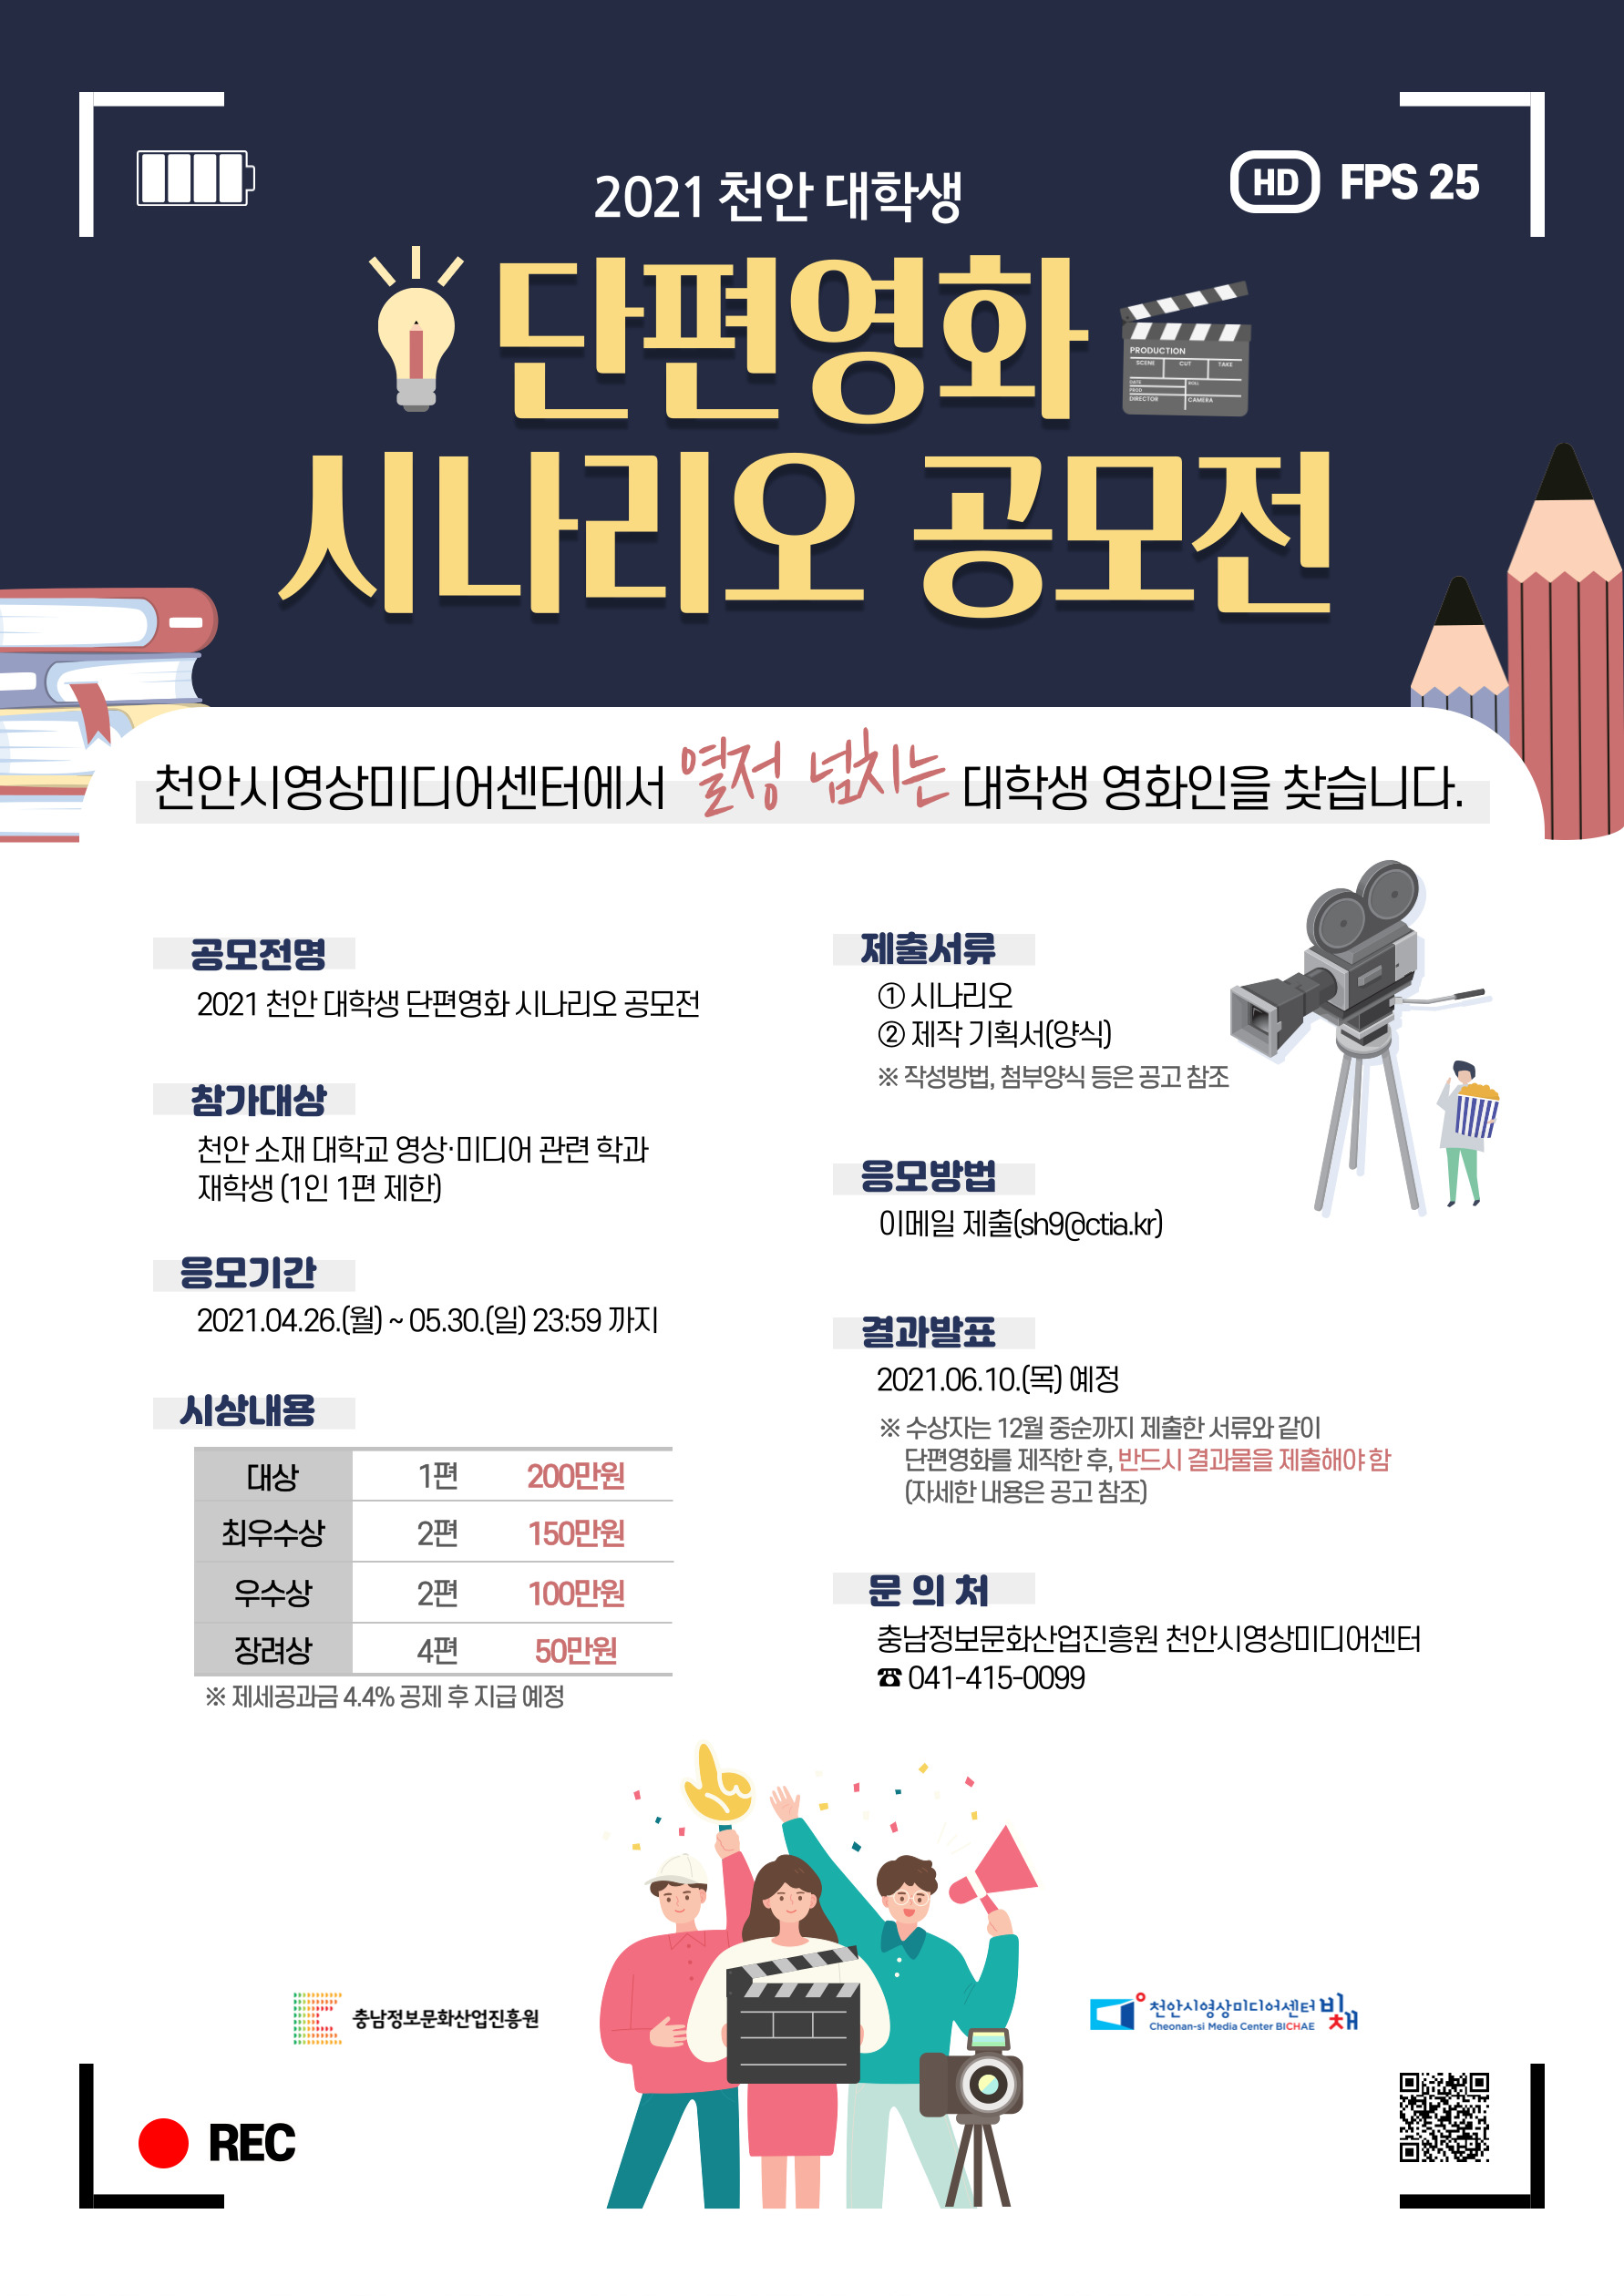 2021 천안 대학생 단편영화 시나리오 공모전 참가자 모집